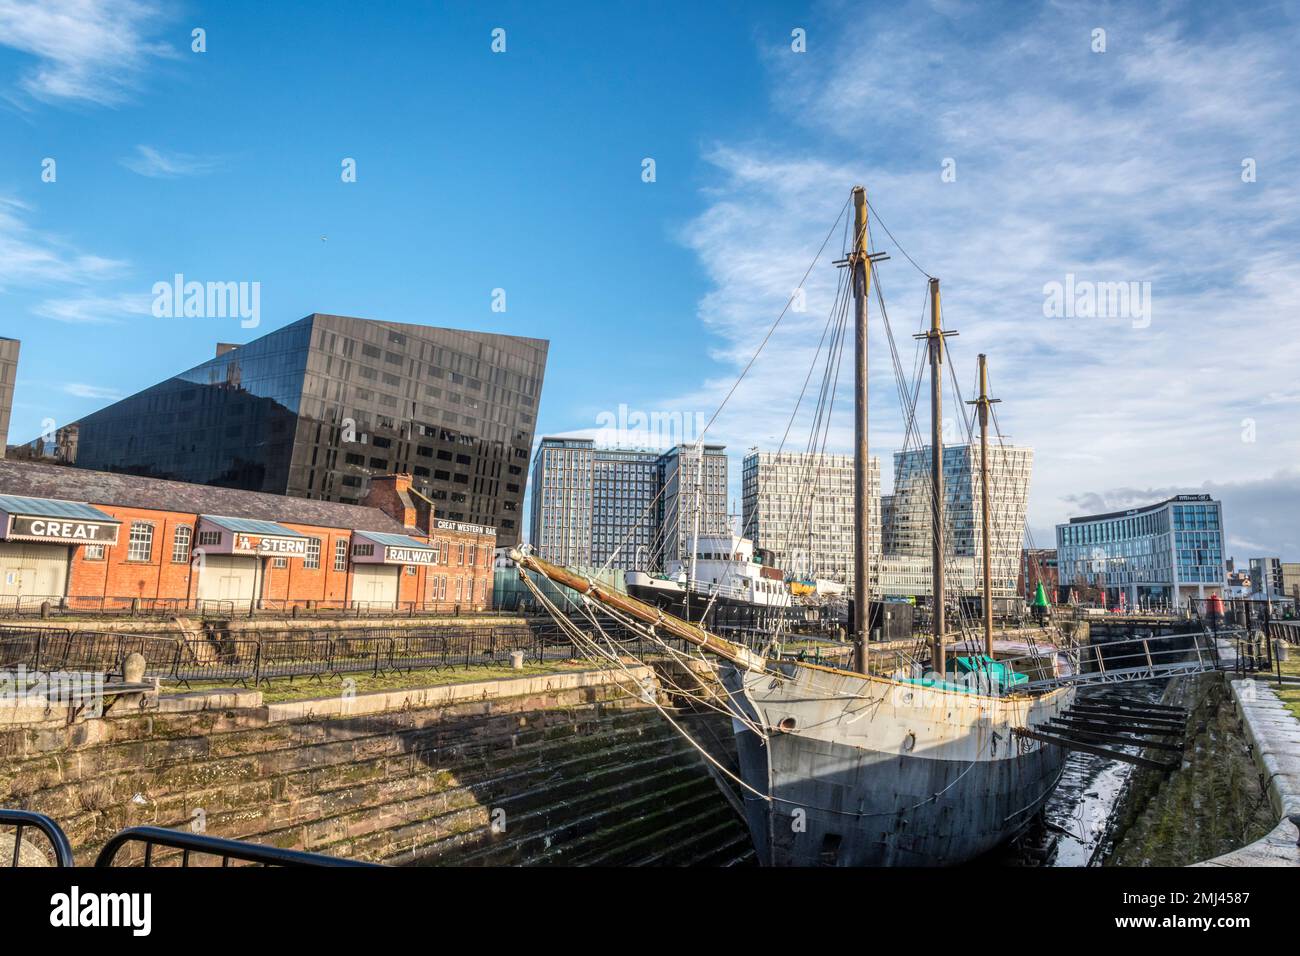 De Wadden, ein Schoner mit drei Masten, im Trockendock in Liverpool. Das letzte funktionierende Schiff auf der Mersey, das Segel benutzte, ist jetzt Teil des Maritime Museum. Stockfoto